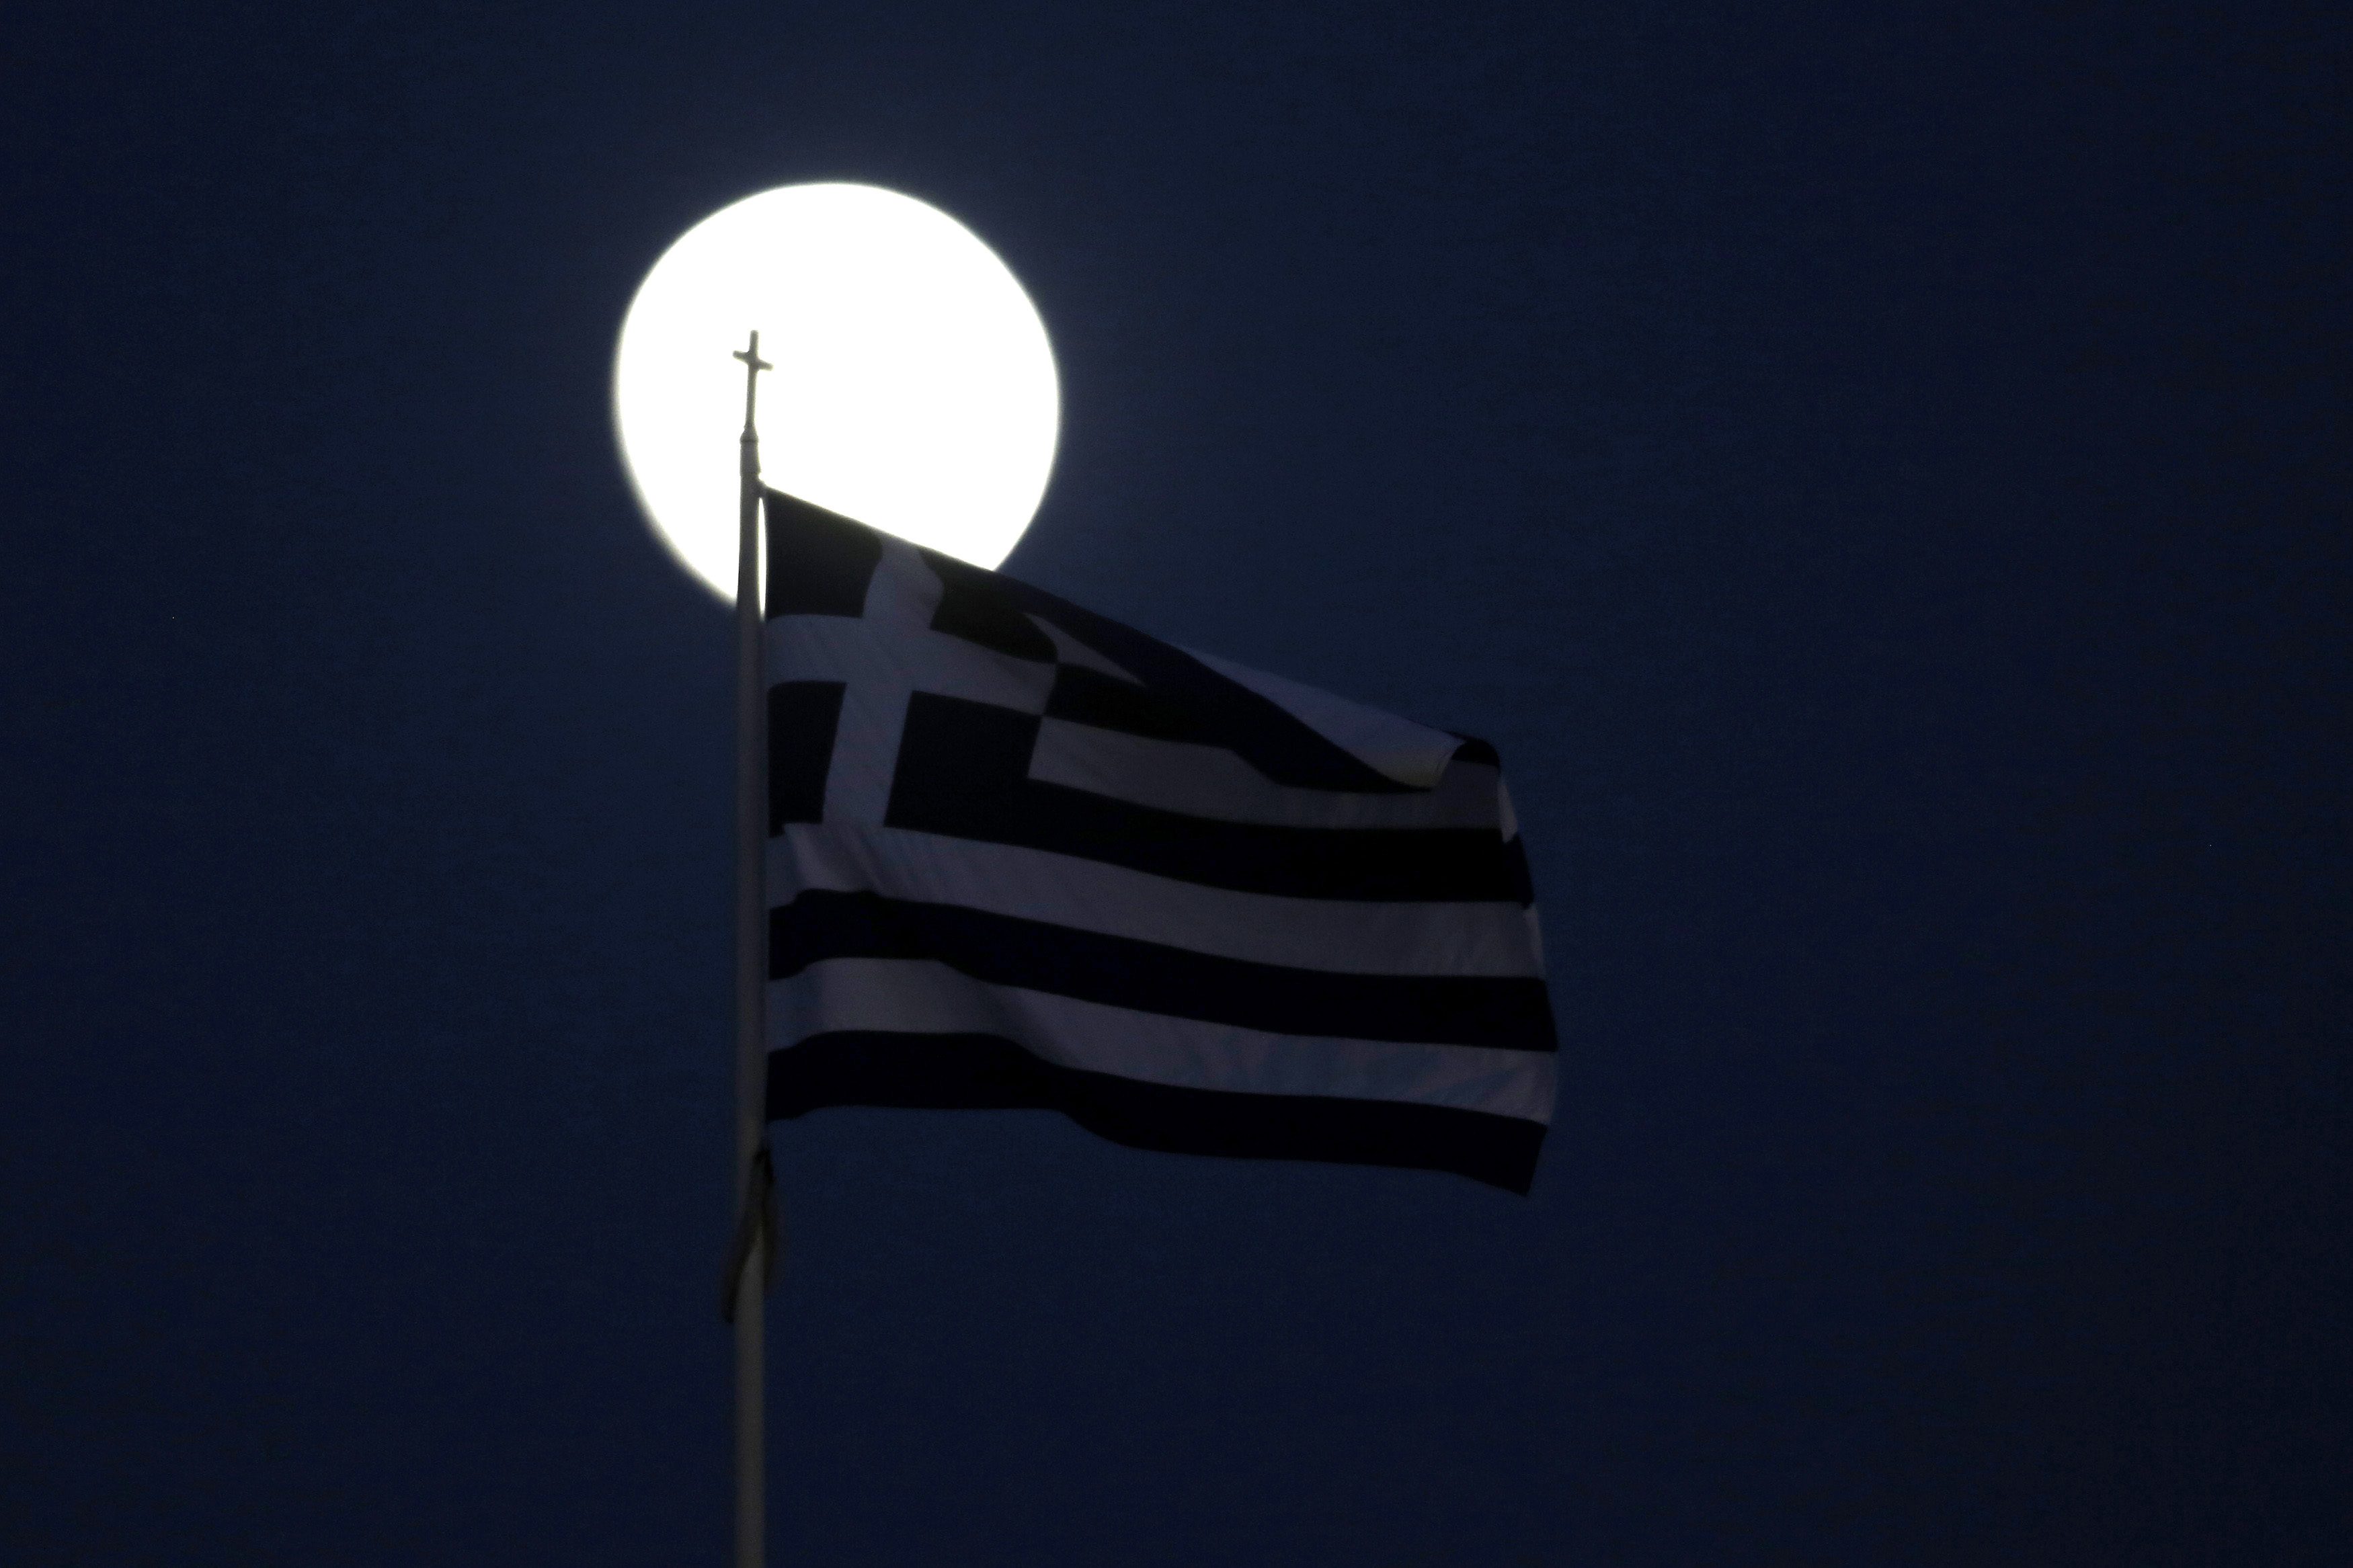 Μυστική συνάντηση κορυφαίων αξιωματούχων για την Ελλάδα στις Βρυξέλλες